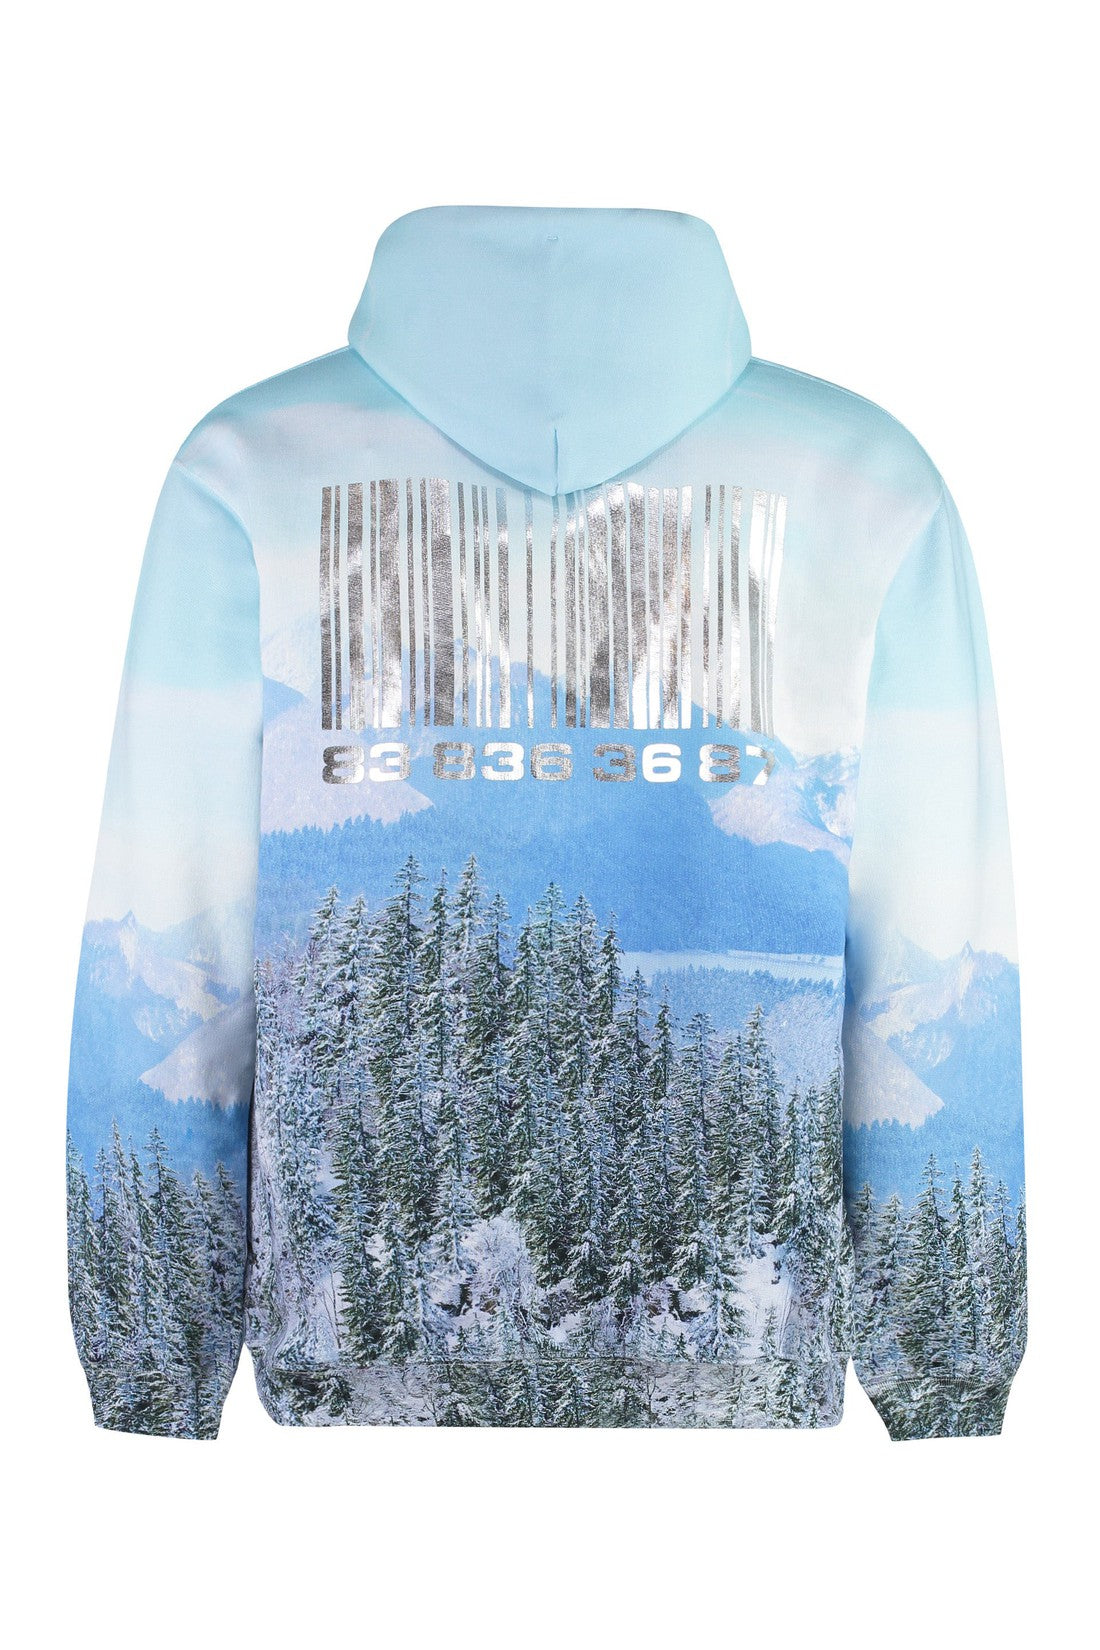 Neuschwanstein Winter printed cotton hoodie